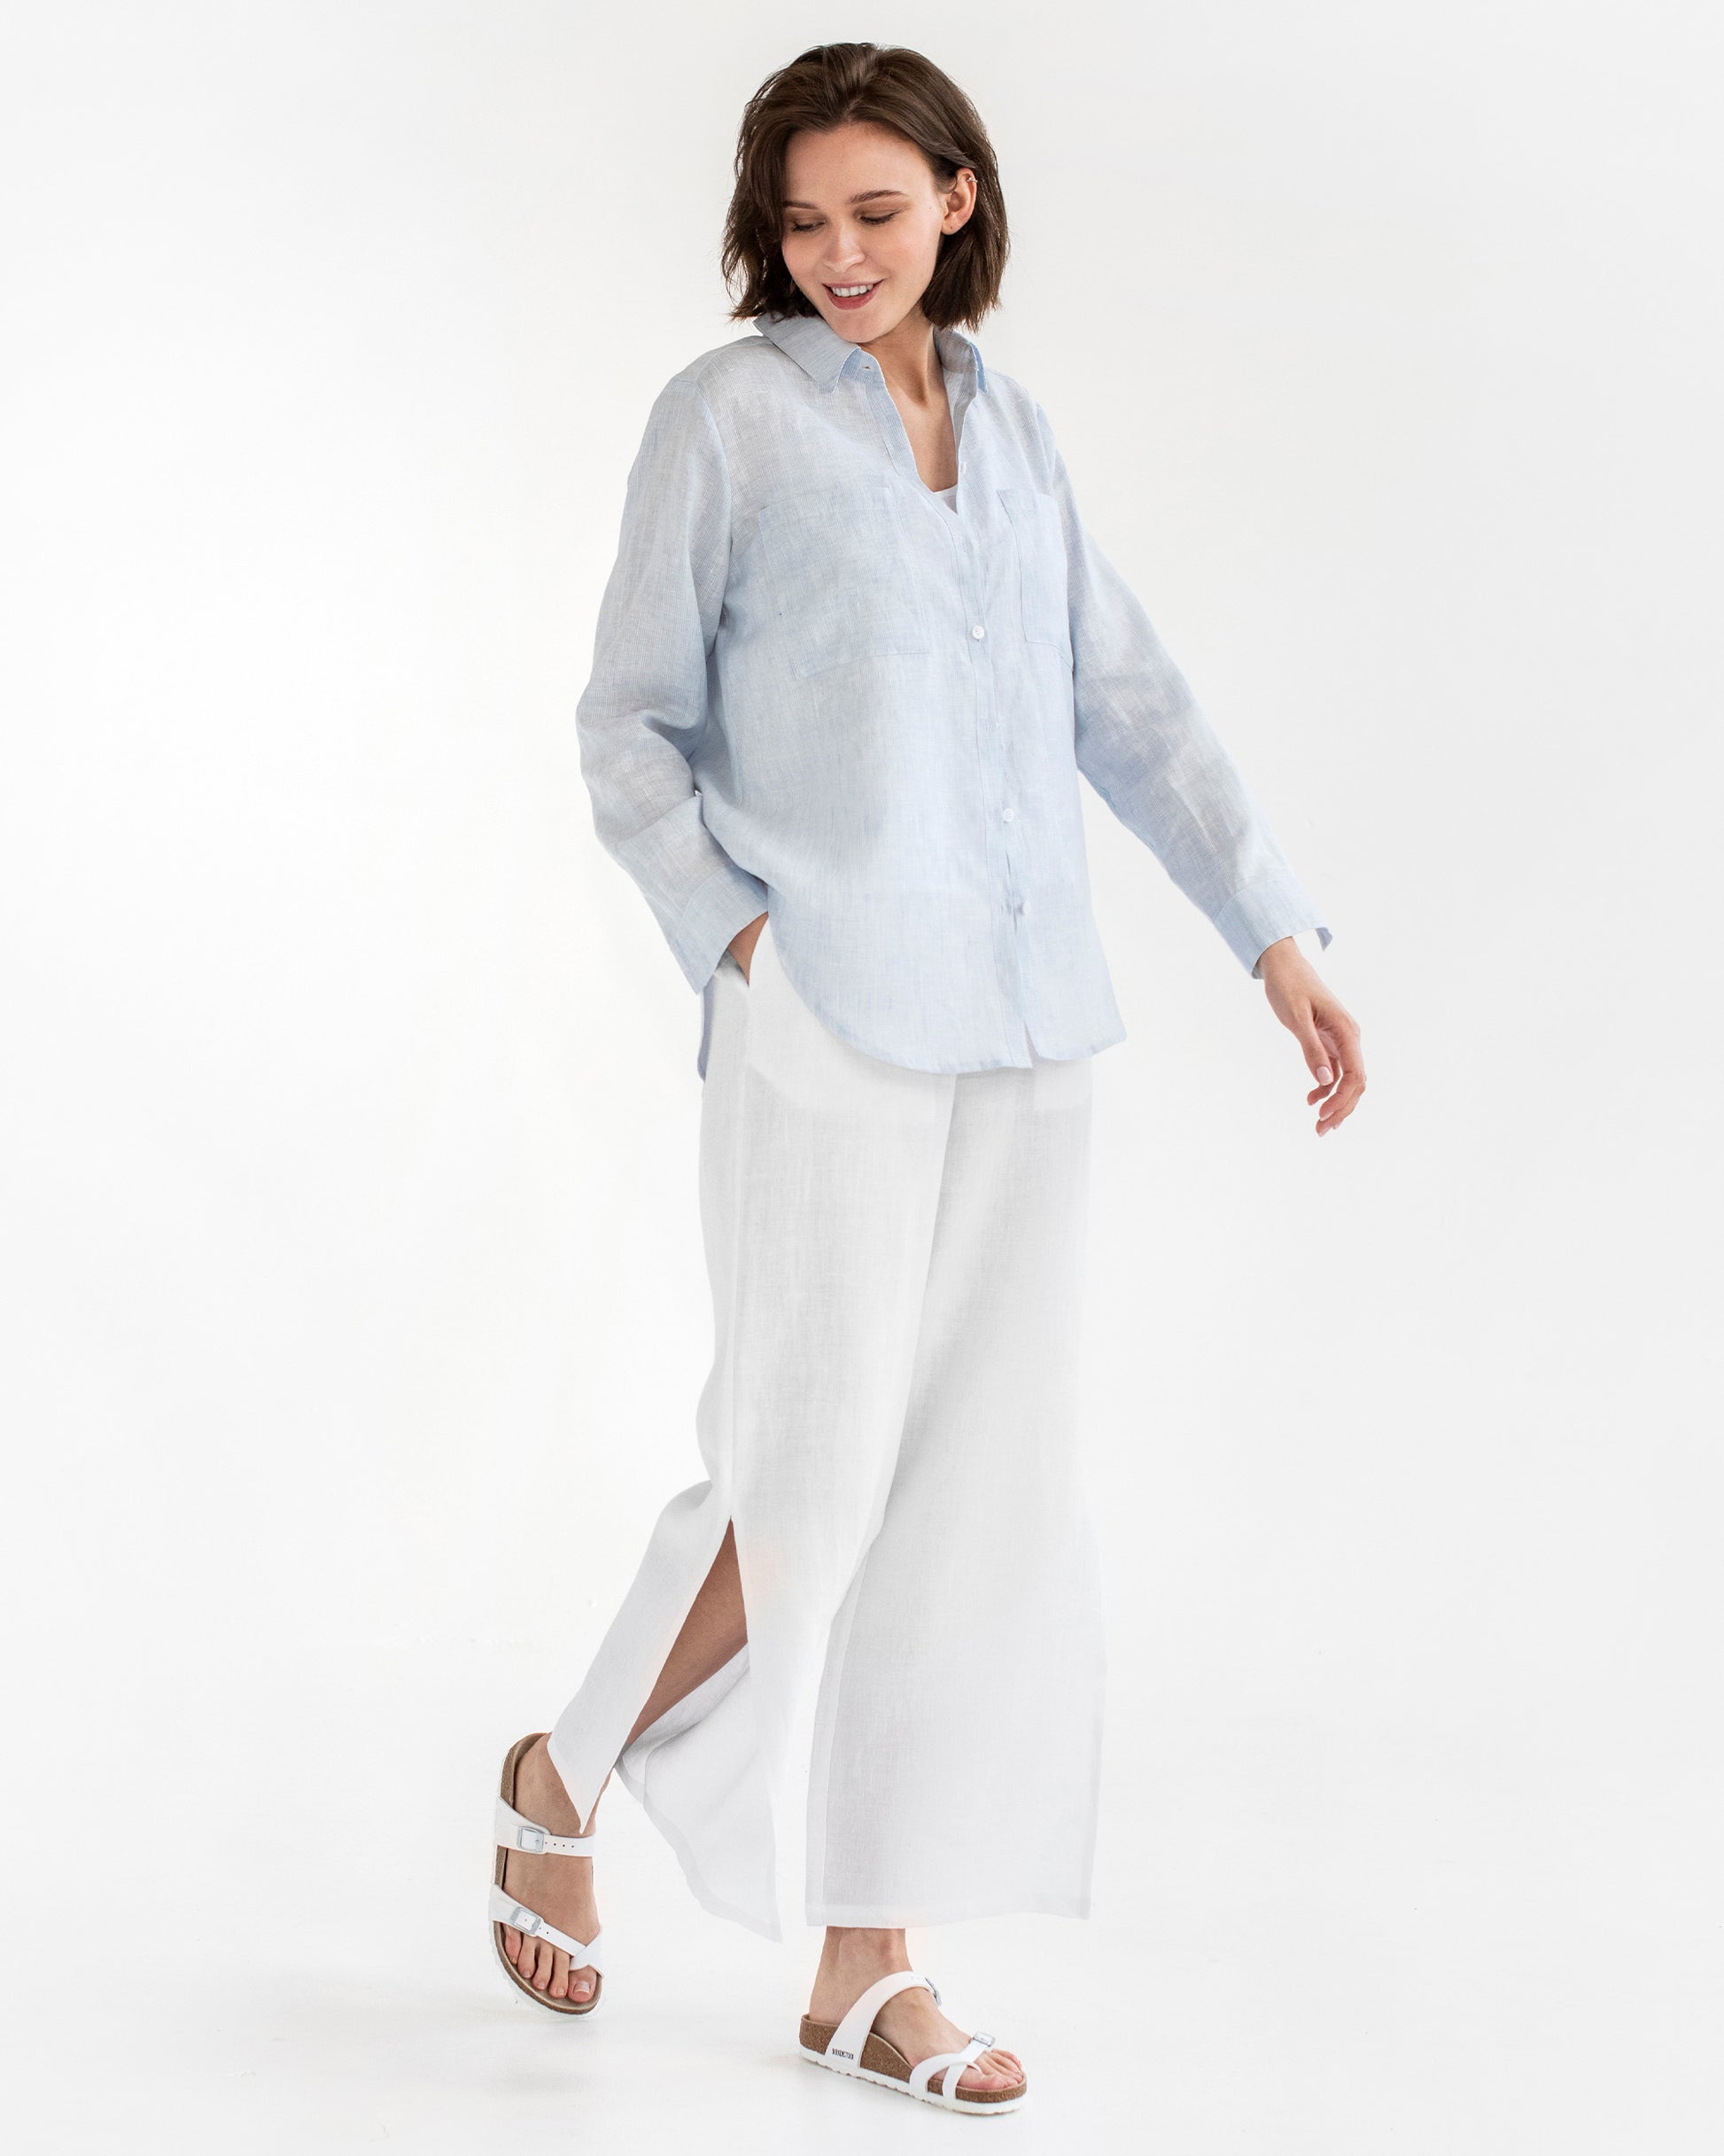 Buy Women's Light Blue 100% Linen Trouser Online in India